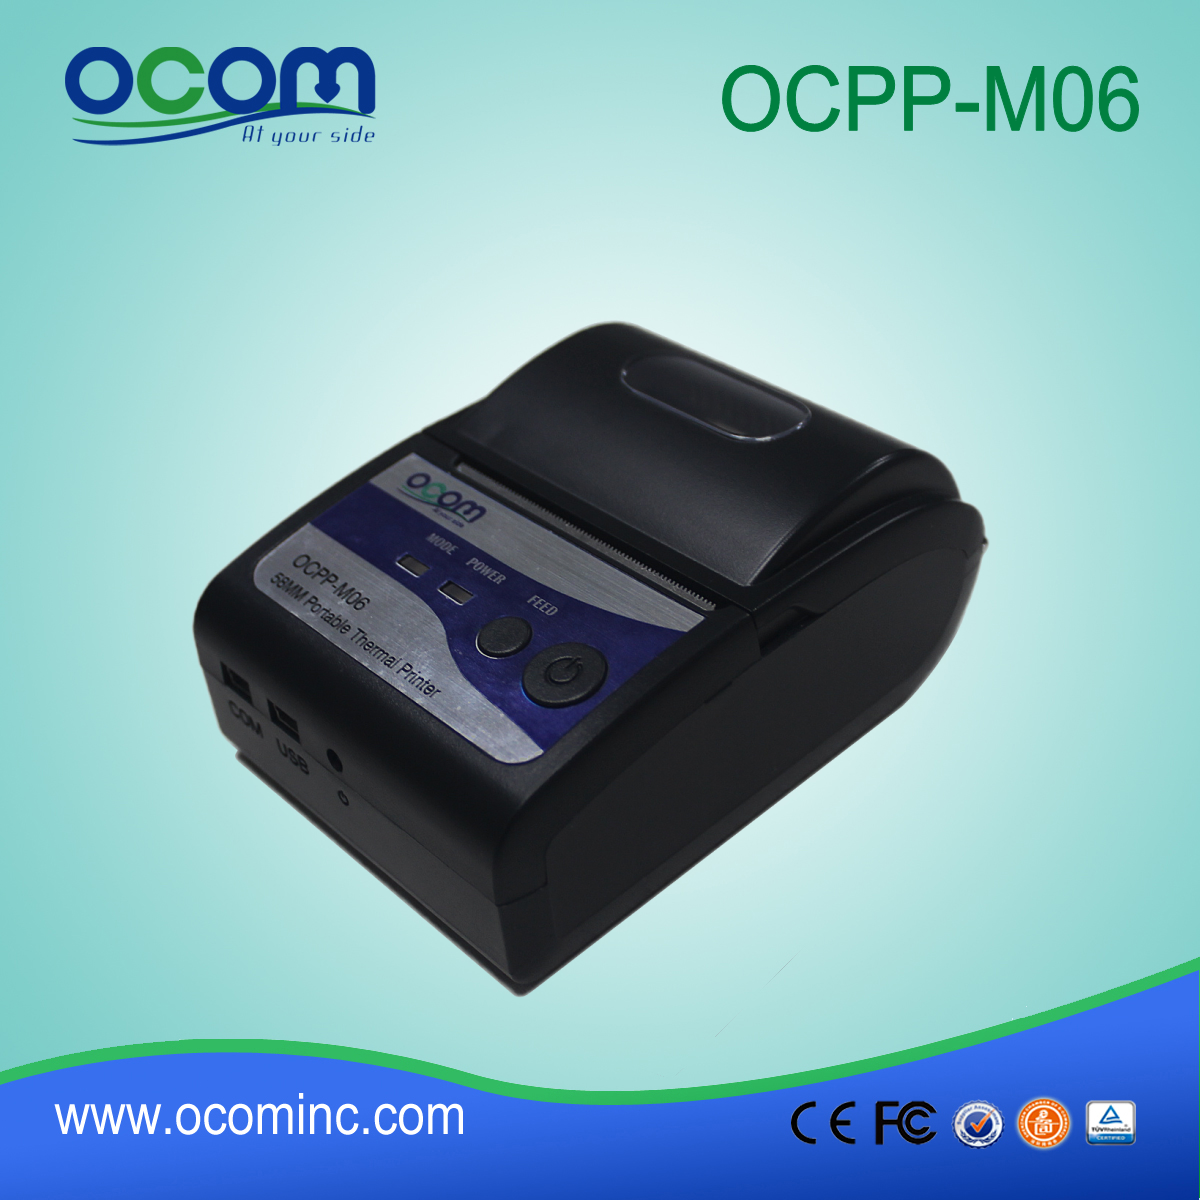 OCPP-M06: usine en Chine pas cher imprimante thermique 2 pouces, imprimante thermique 2 pouces